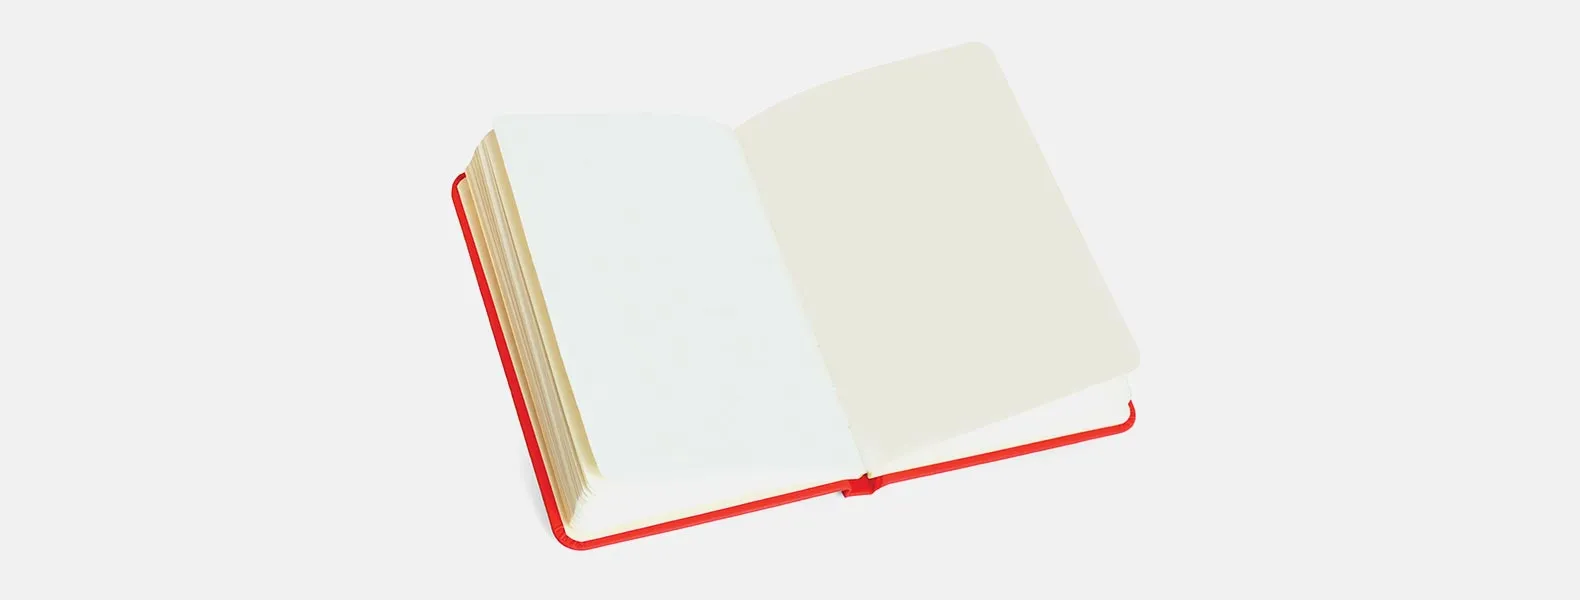 Caderno para anotações vermelho com capa dura. Conta com 80 folhas, porta caneta e elástico para fechamento. Gramatura da folha de 70 g/m2.